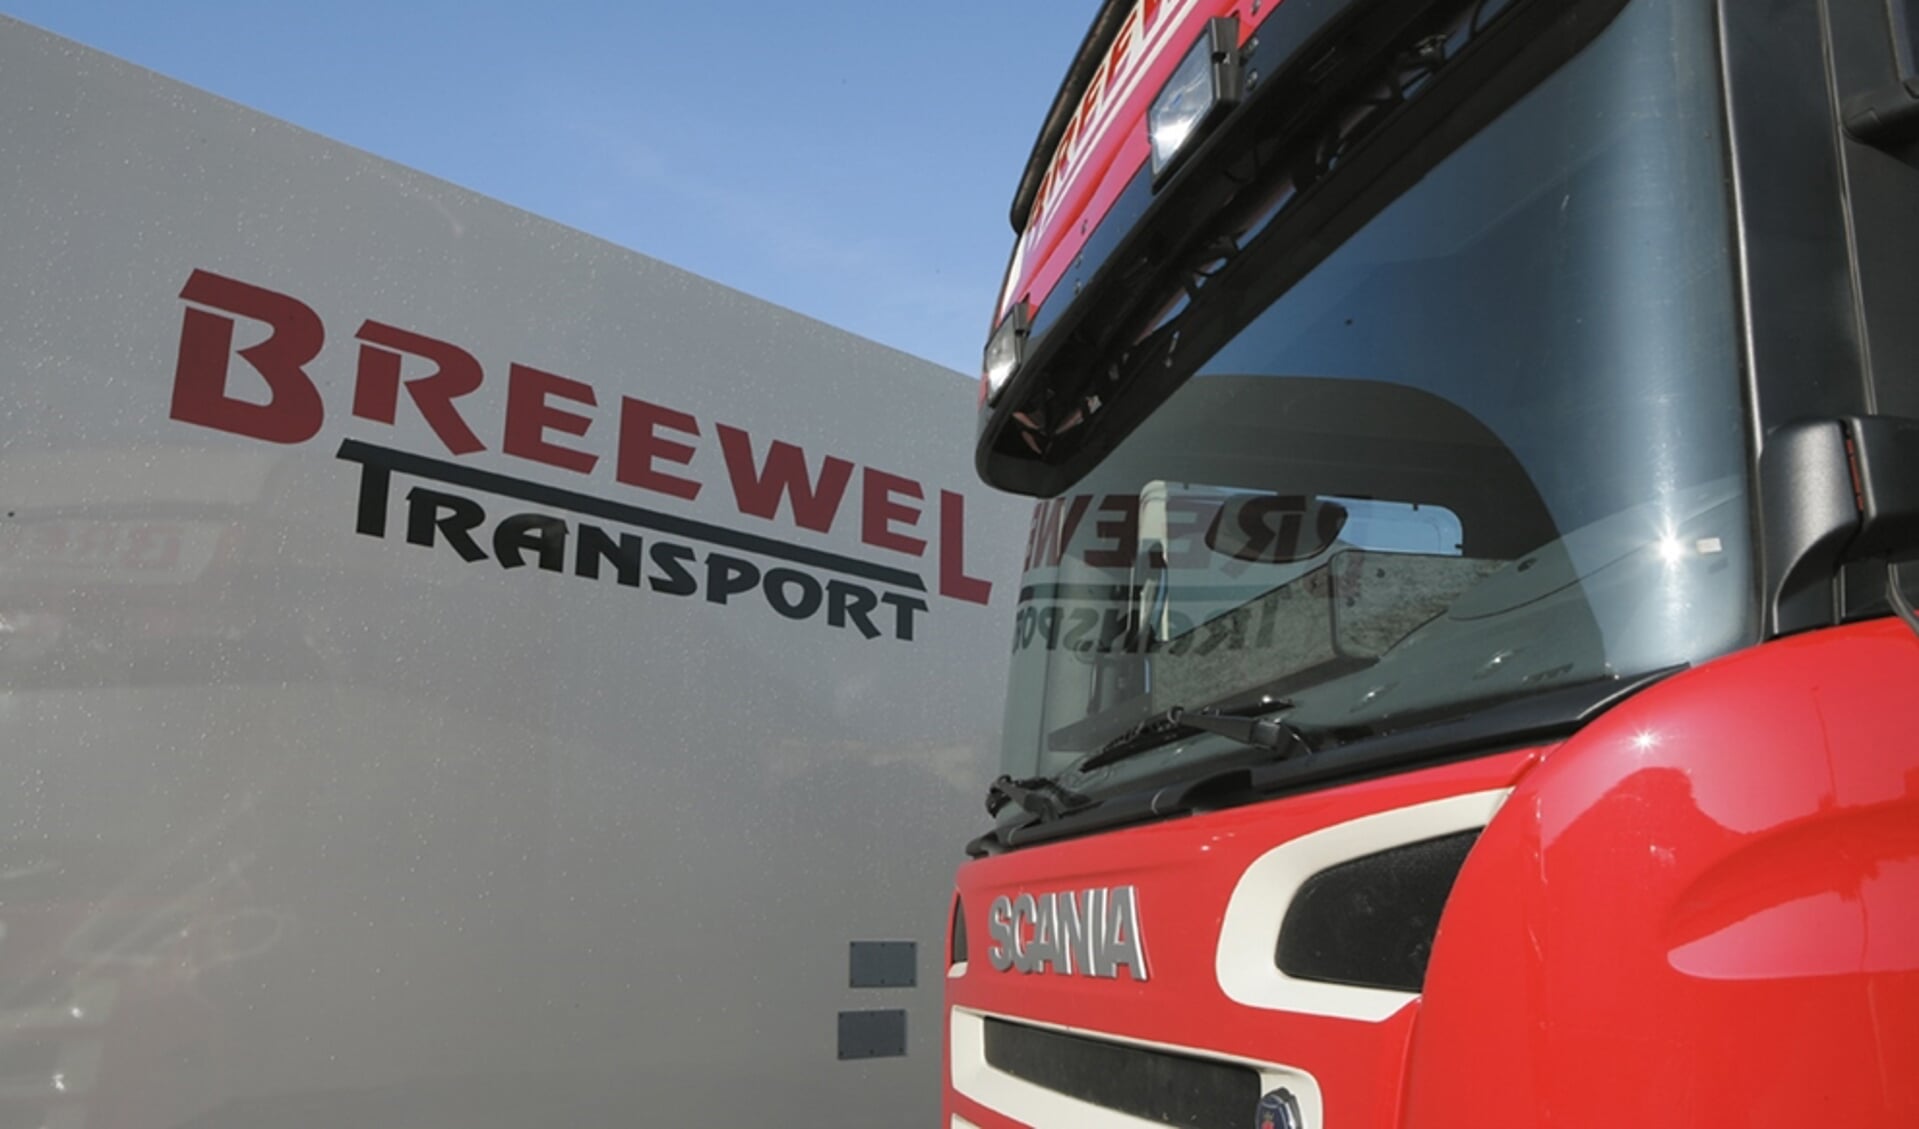 Breewel Transport organiseert i.s.m. Blom Verkeersschool een 'kennismakingsdag'.